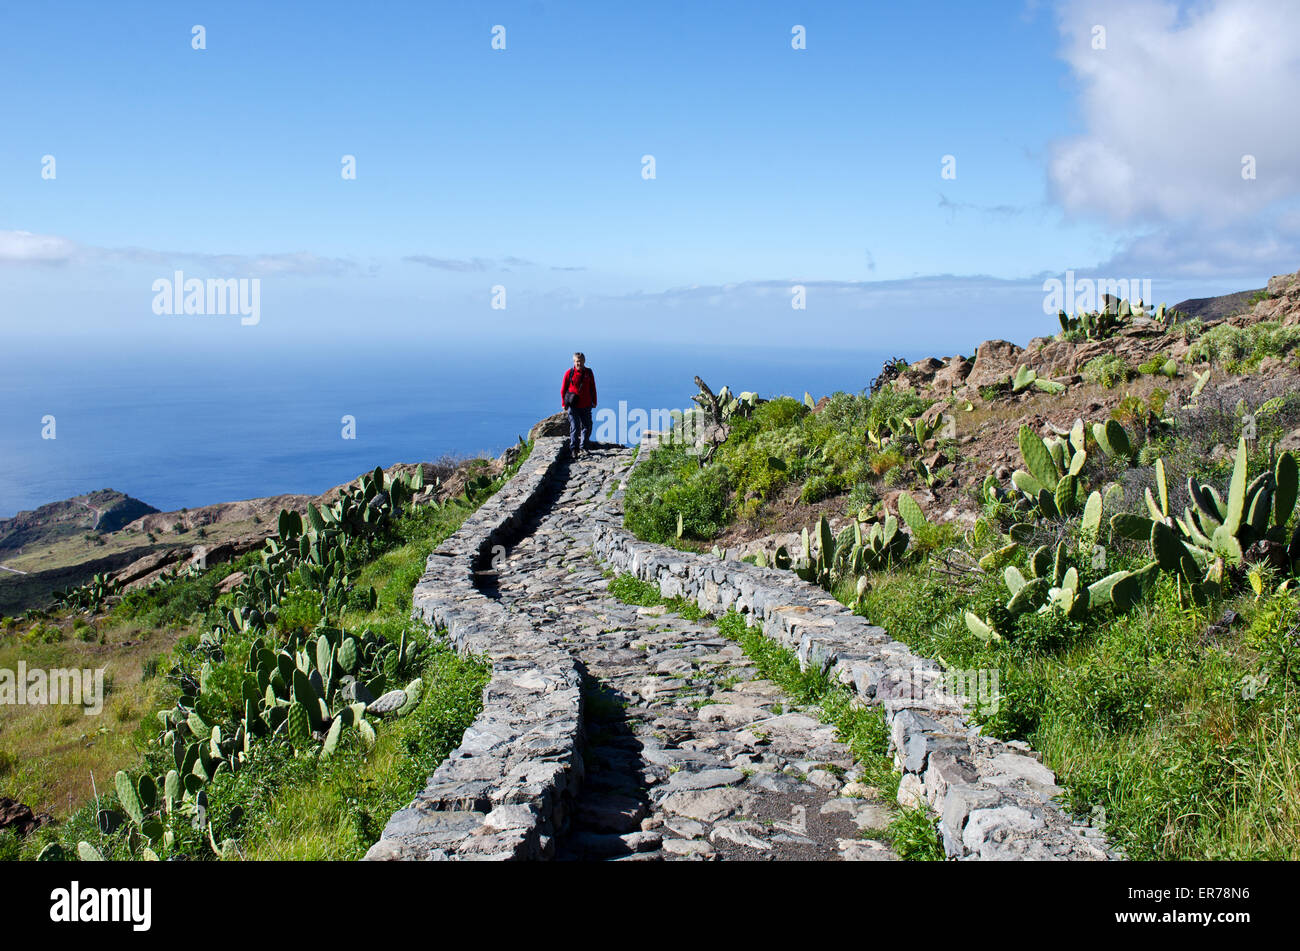 Randonneur sur sentier vers Drago Centenario, île de La Gomera. Canaries, Espagne Banque D'Images